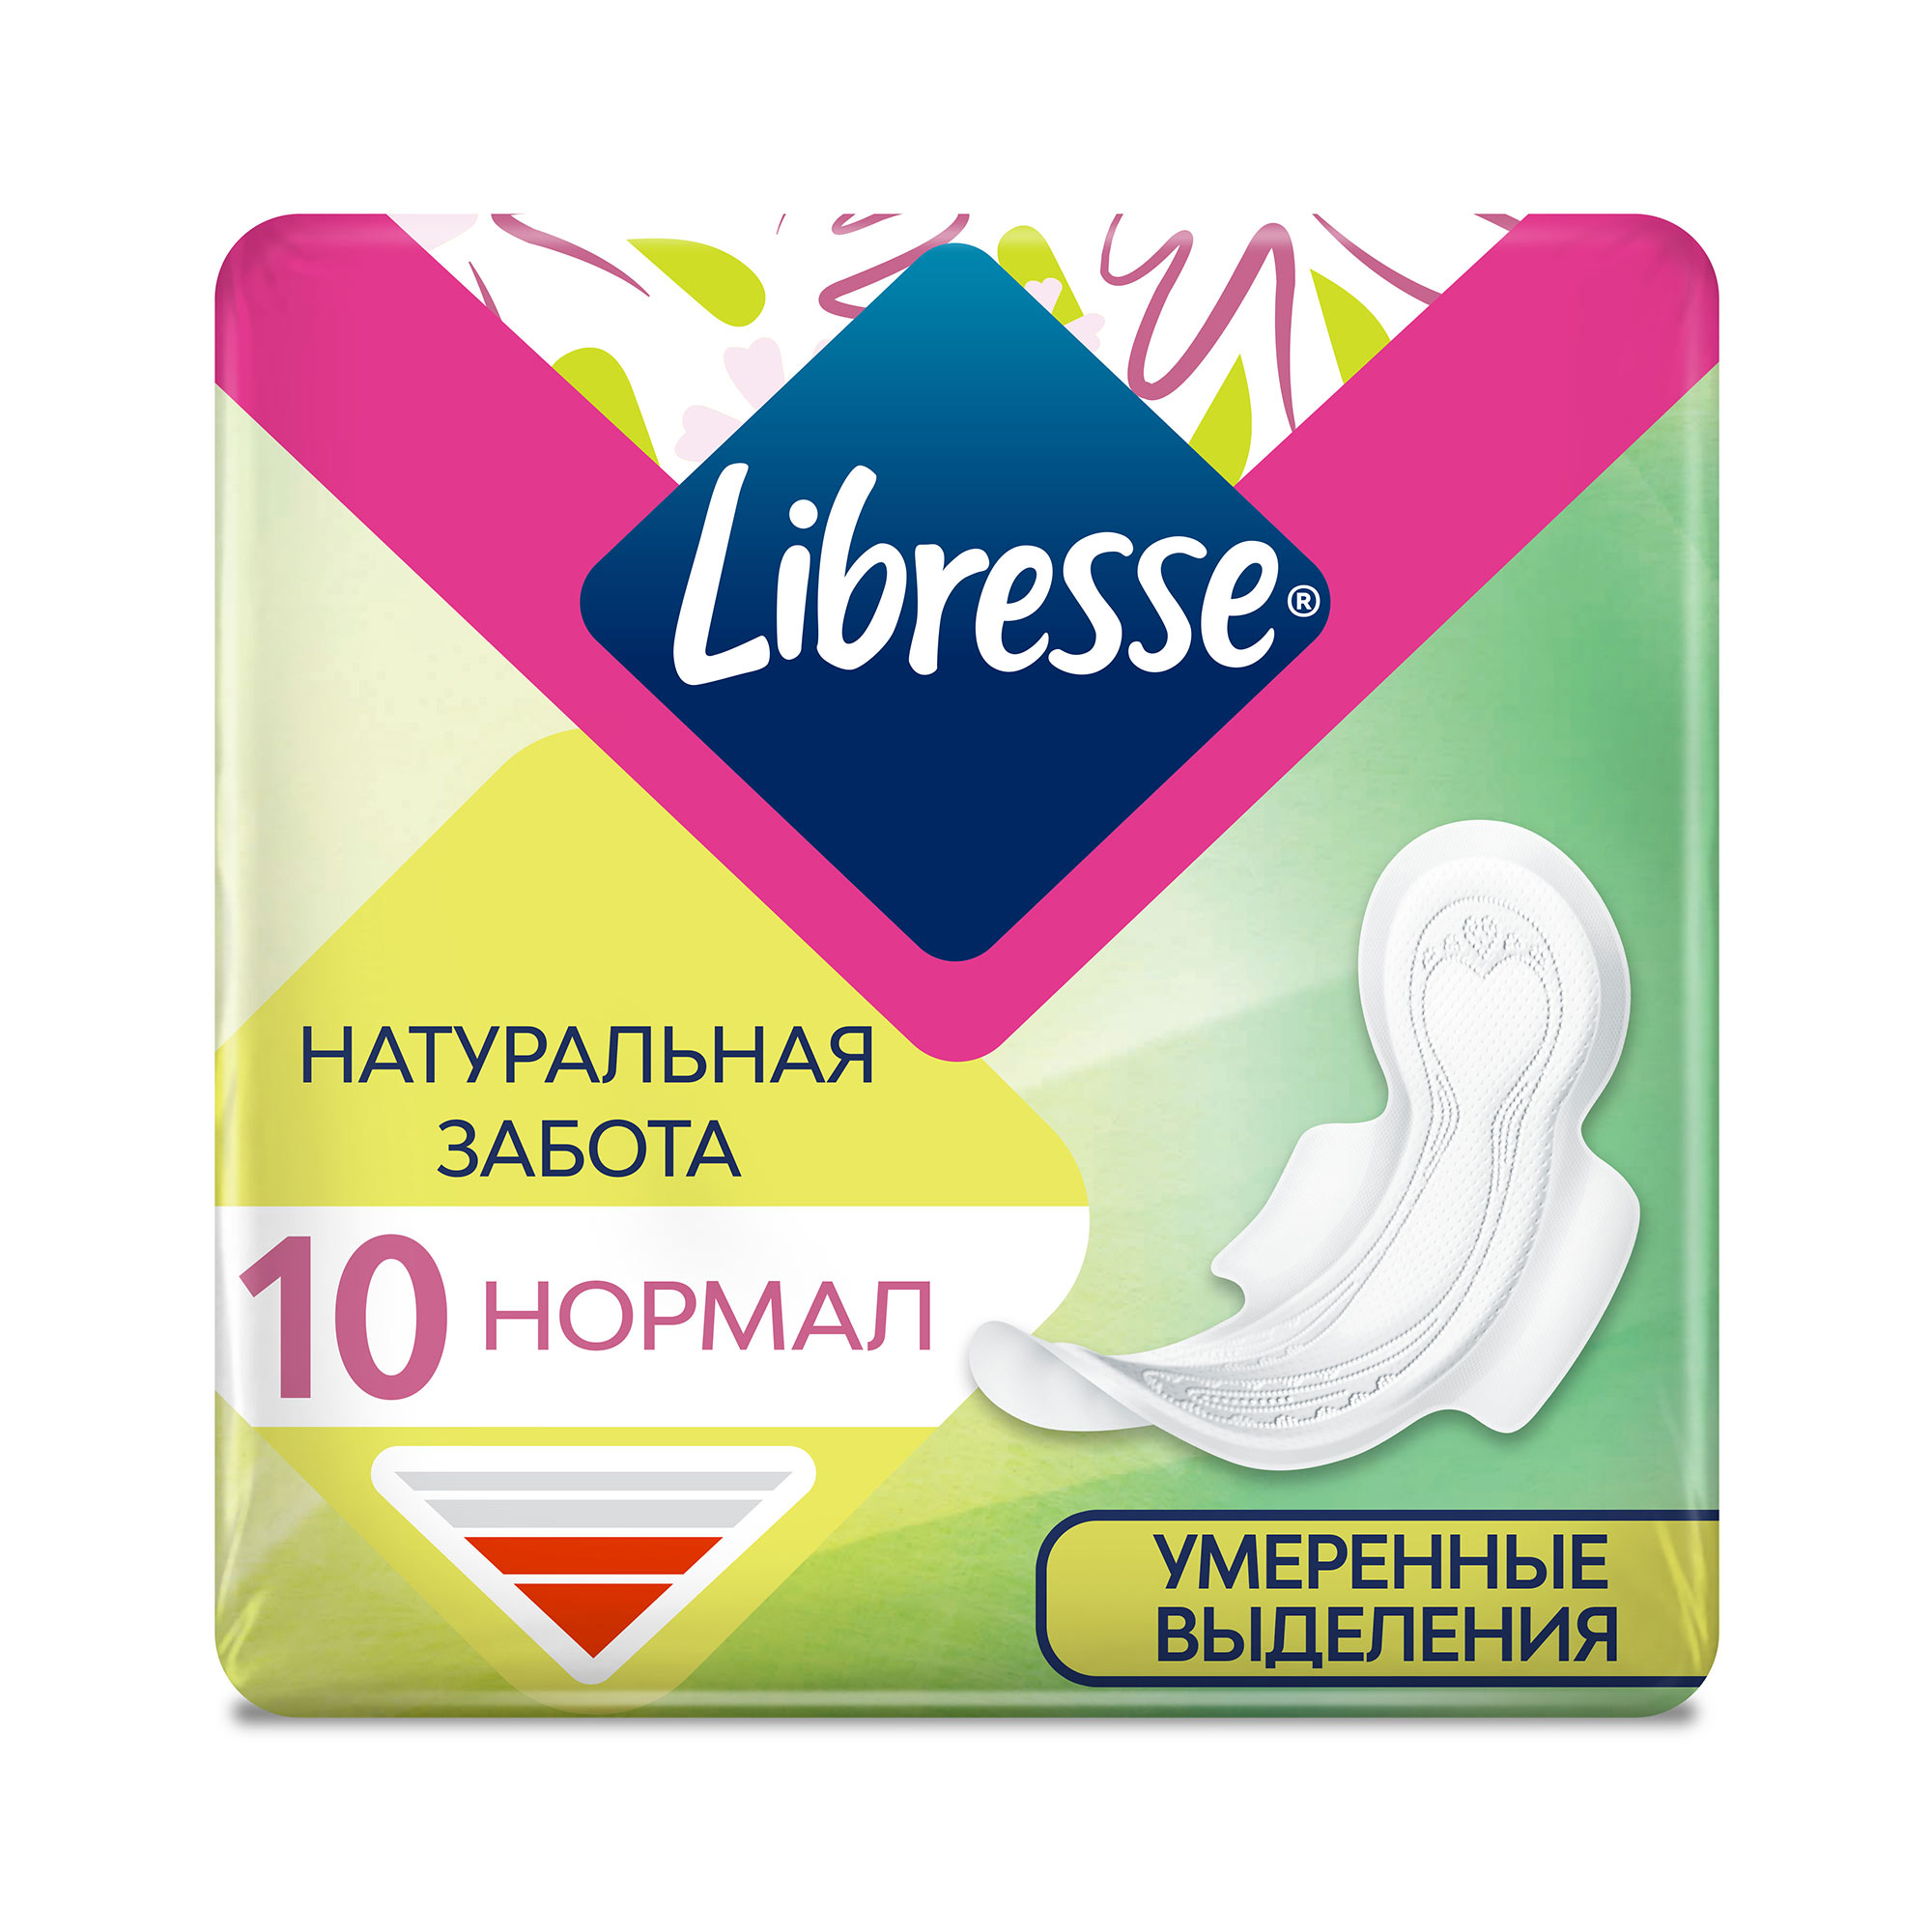 Гигиенические прокладки Libresse Natural Care Ultra Normal, 10 шт.